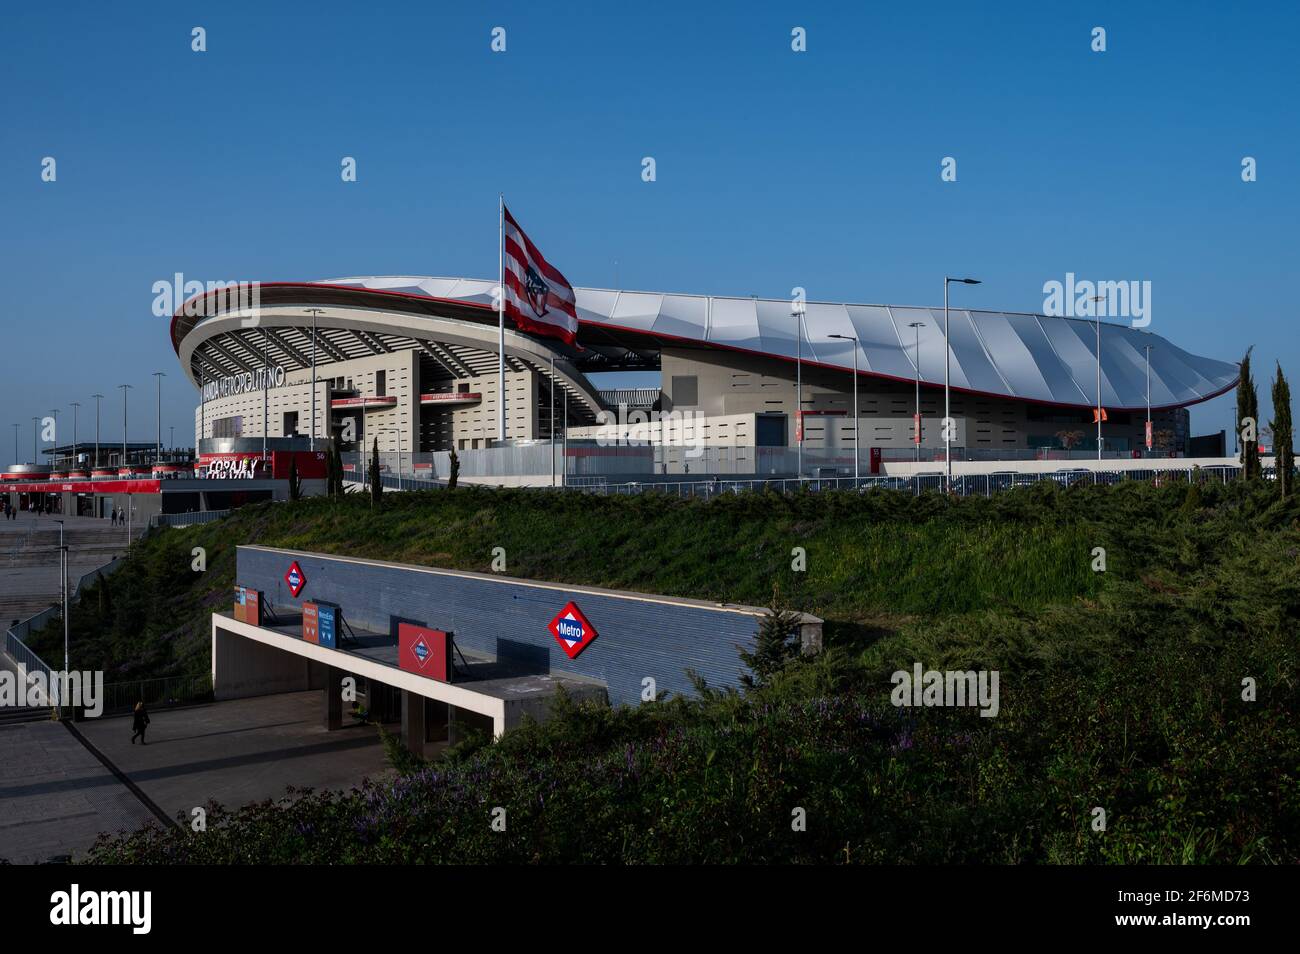 Wanda metropolitan stadium hi-res stock photography and images - Alamy